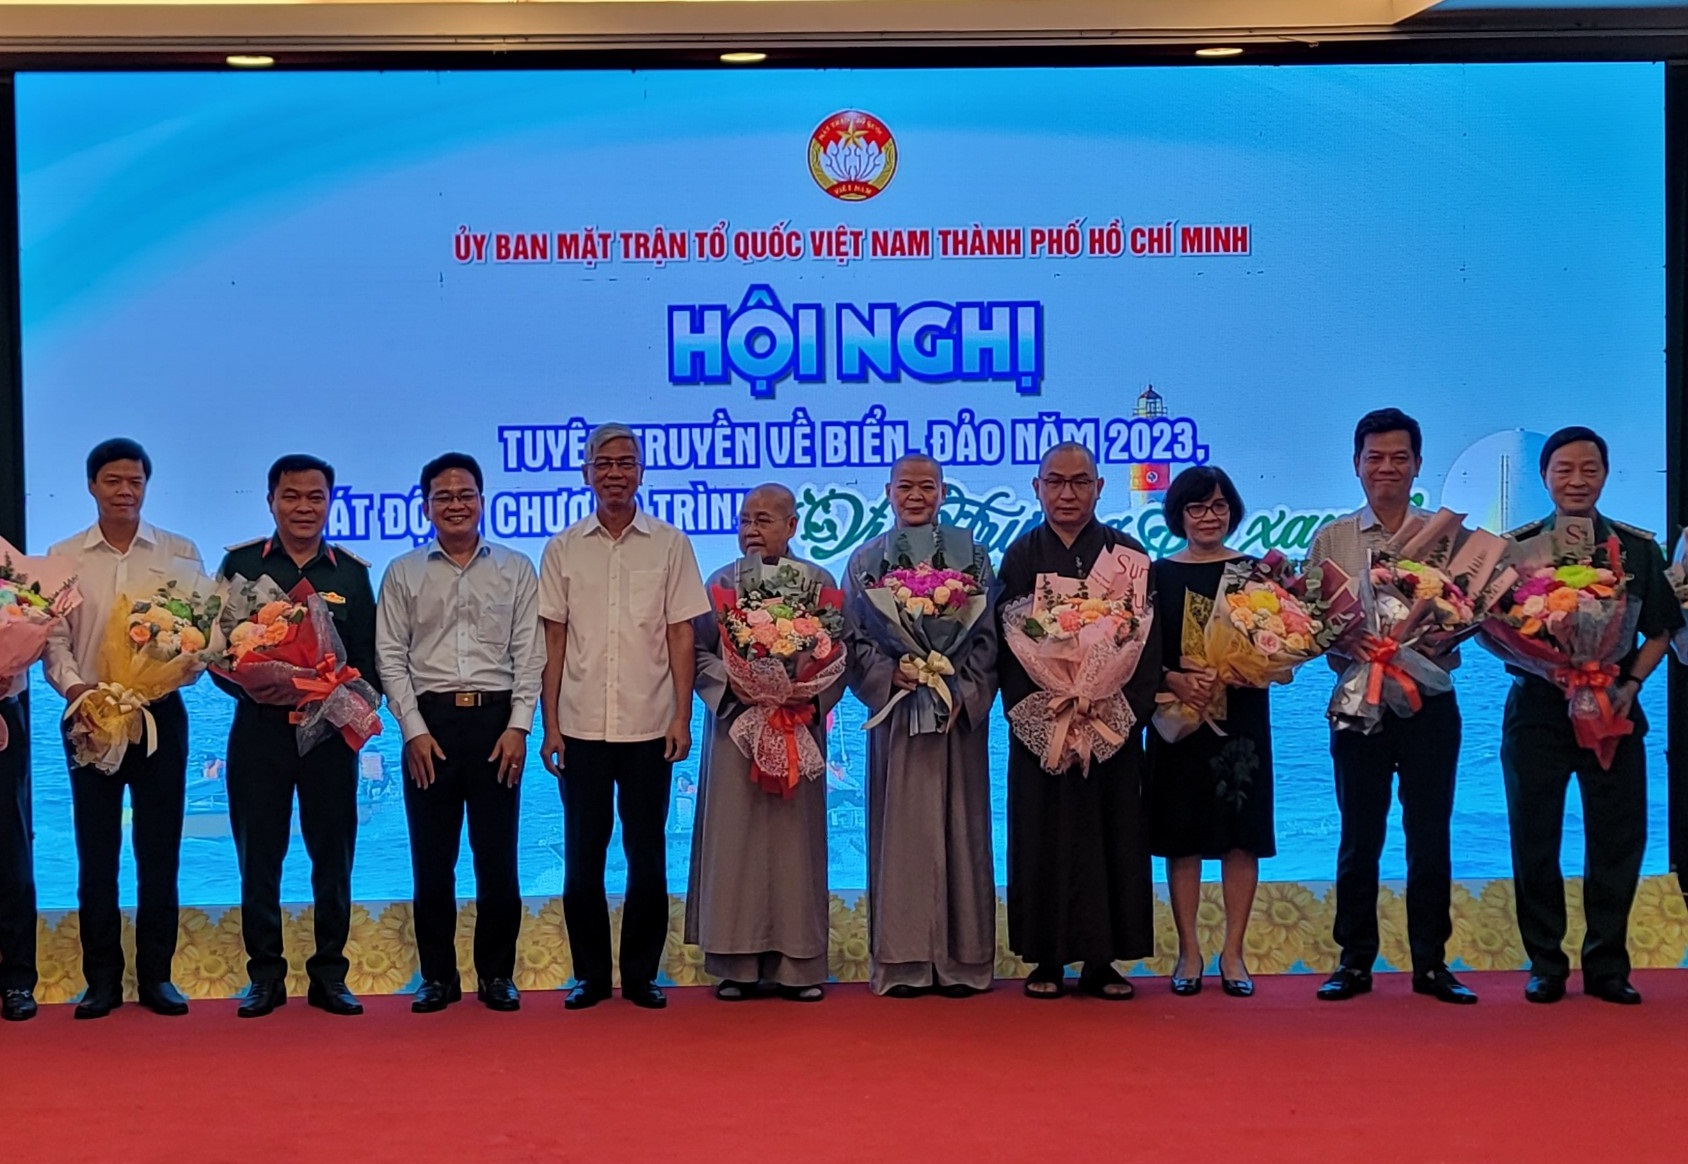 Đại diện các đơn vị hưởng ứng lời phát động của Ủy ban Mặt trận Tổ quốc Việt Nam TPHCM đăng ký ủng hộ Chương trình “Vì Trường Sa xanh” năm 2023. Ảnh: Quốc Ngọc